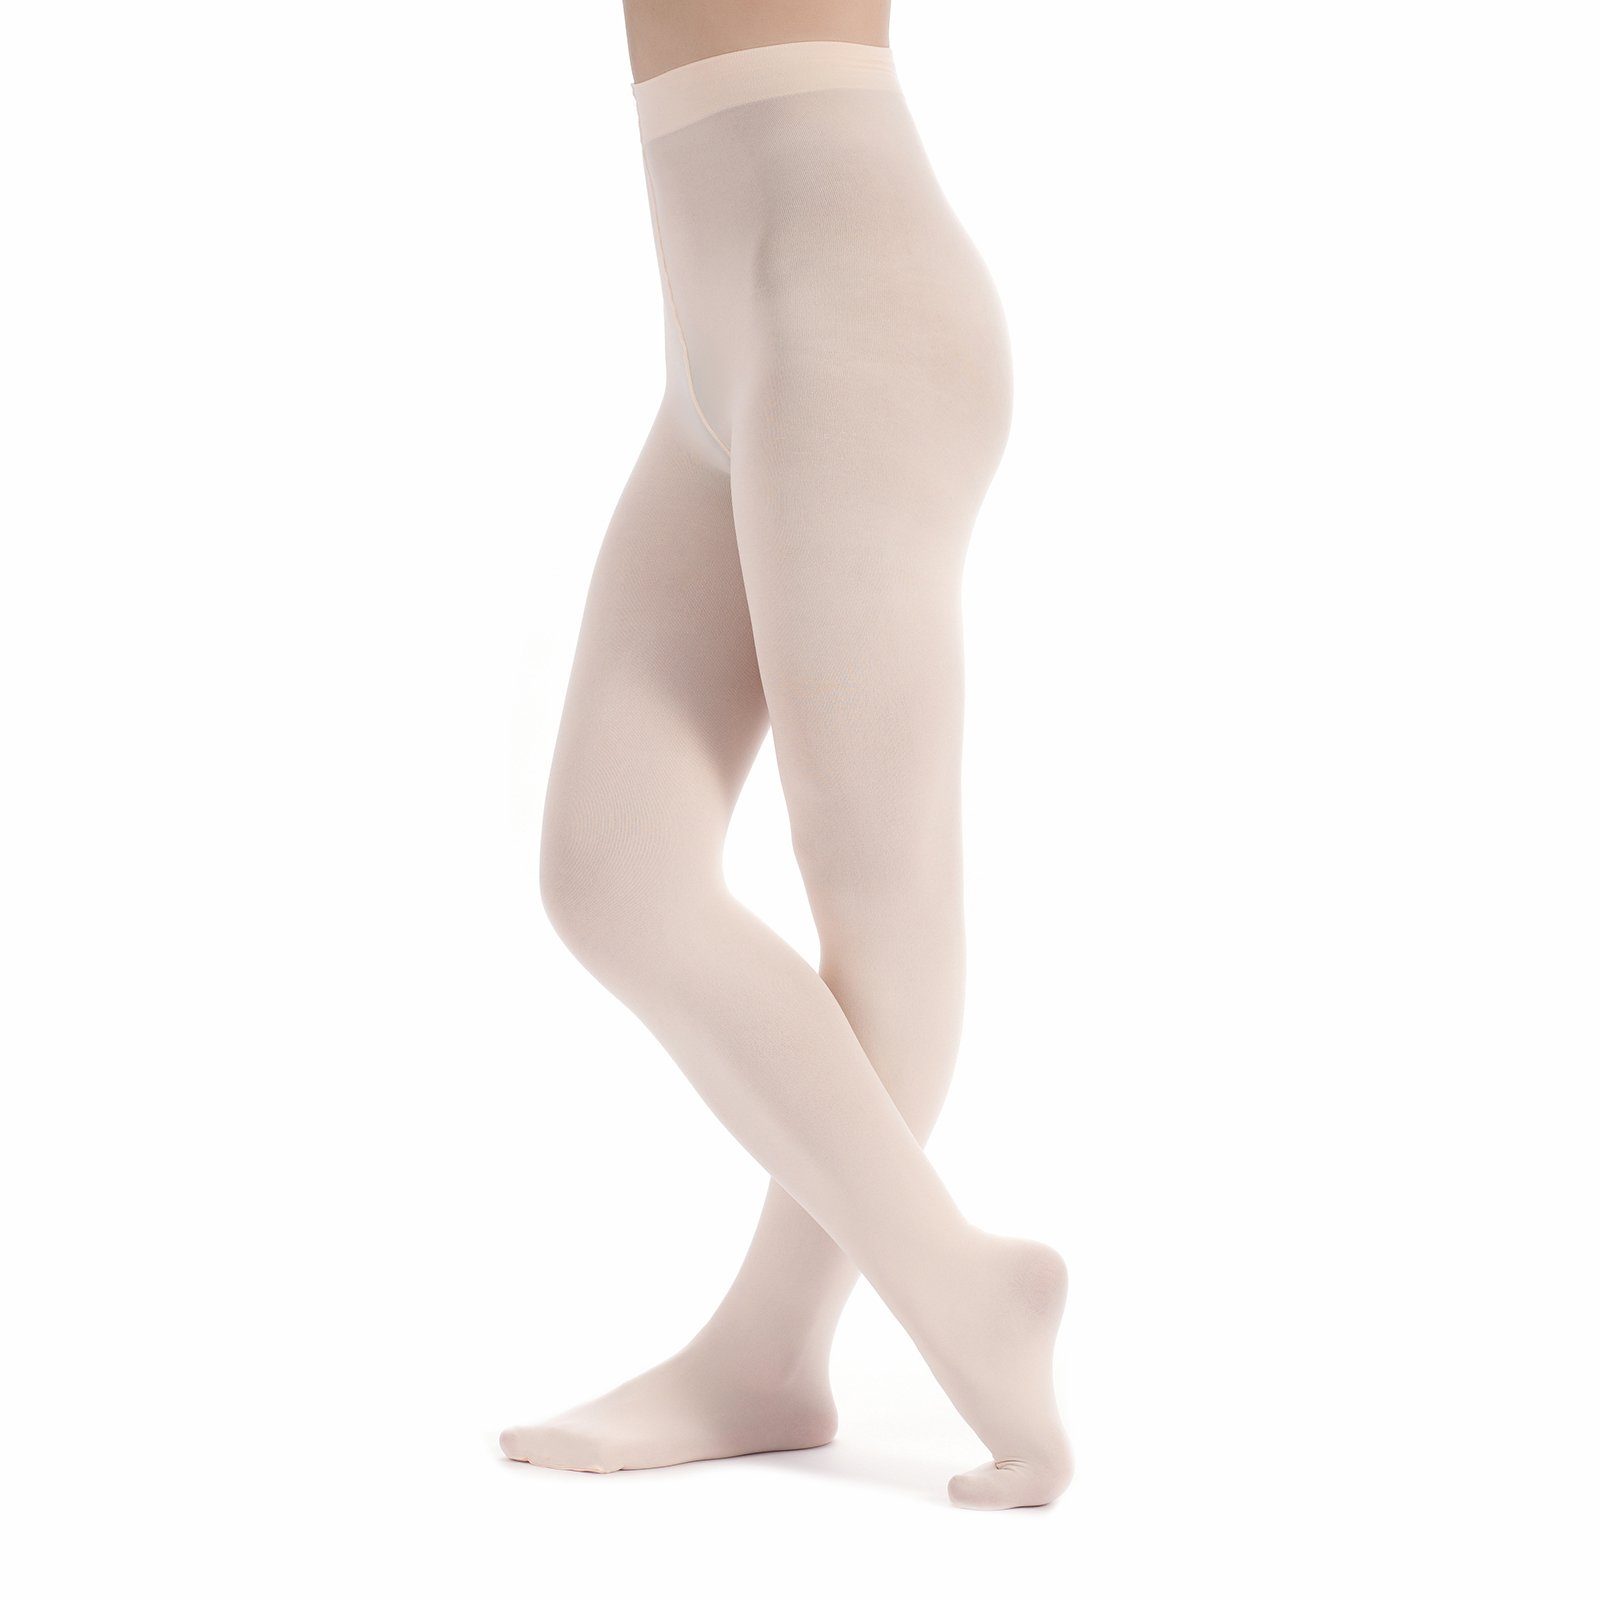 tanzmuster Strumpfhose Damen Ballettstrumpfhose Kira mit Fuß wunderbar weich, elastisch und strapazierfähig ballett-rosa